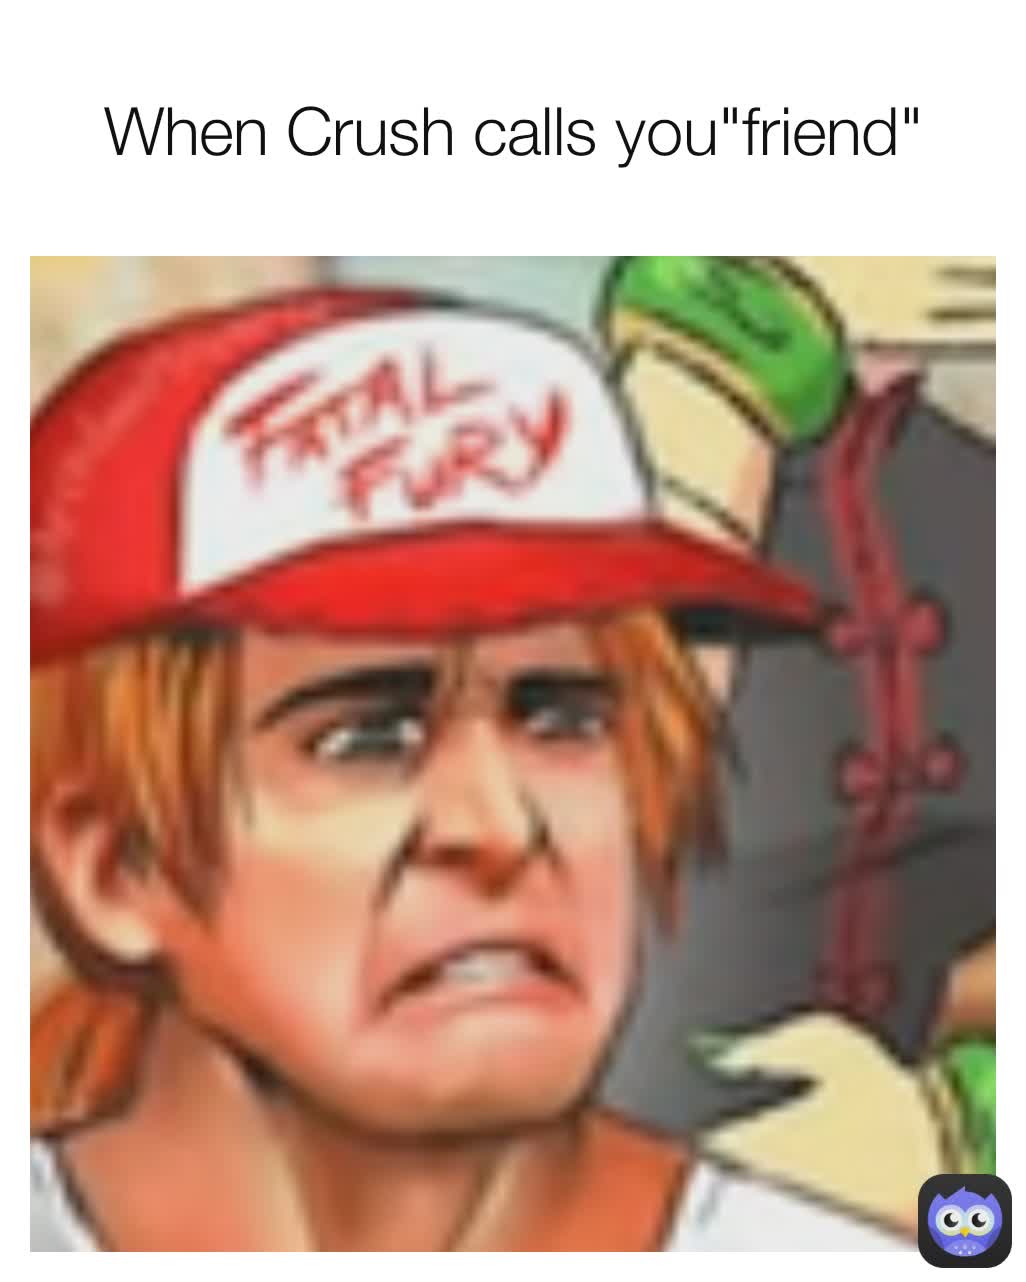 When Crush calls you"friend"